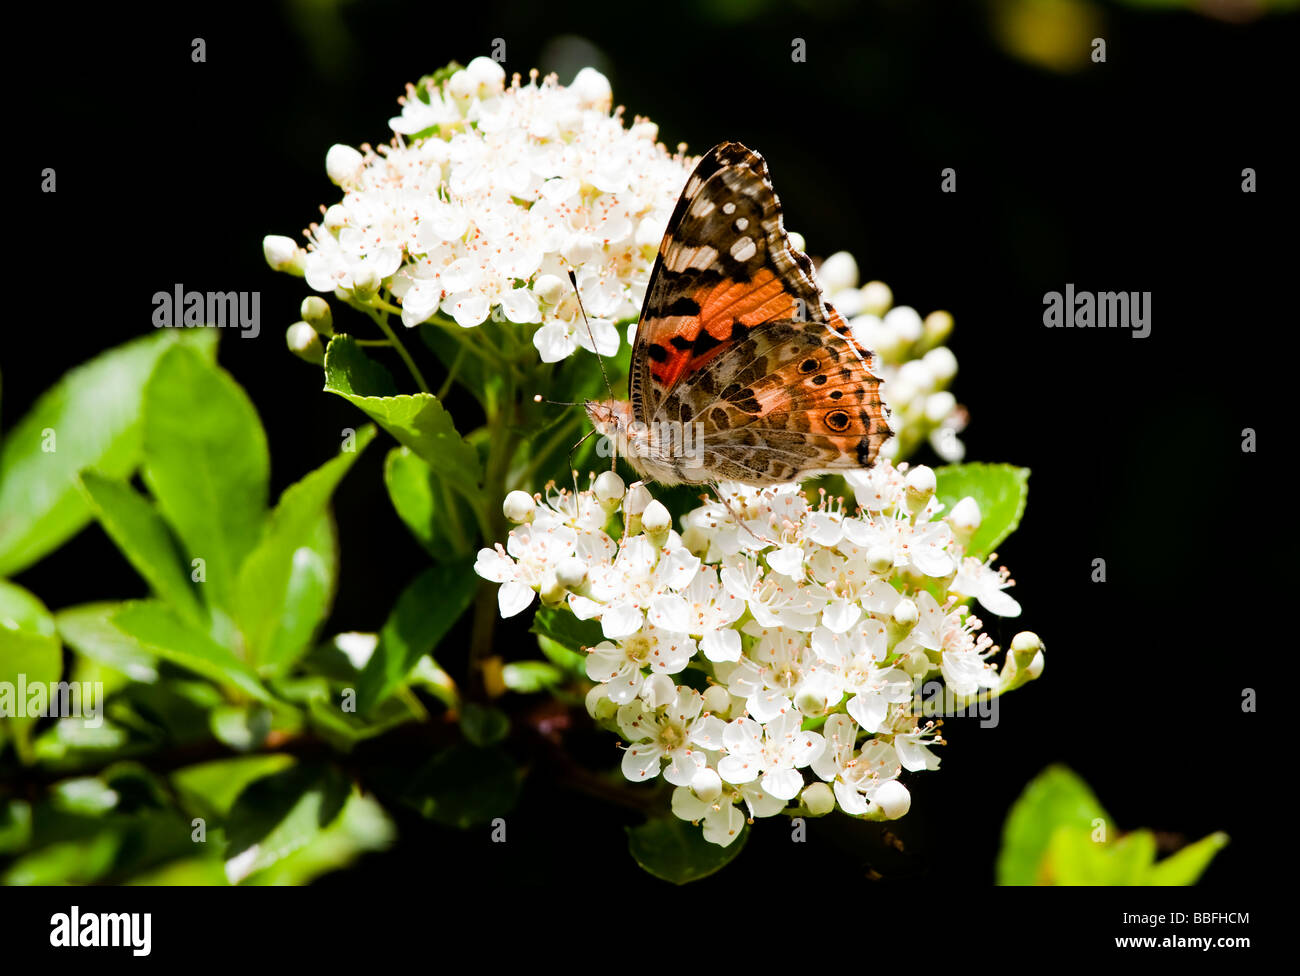 Distelfalter Schmetterling ruht auf weiß blühende Weißdorn Vanessa Cardui Spannweite 60mm Stockfoto